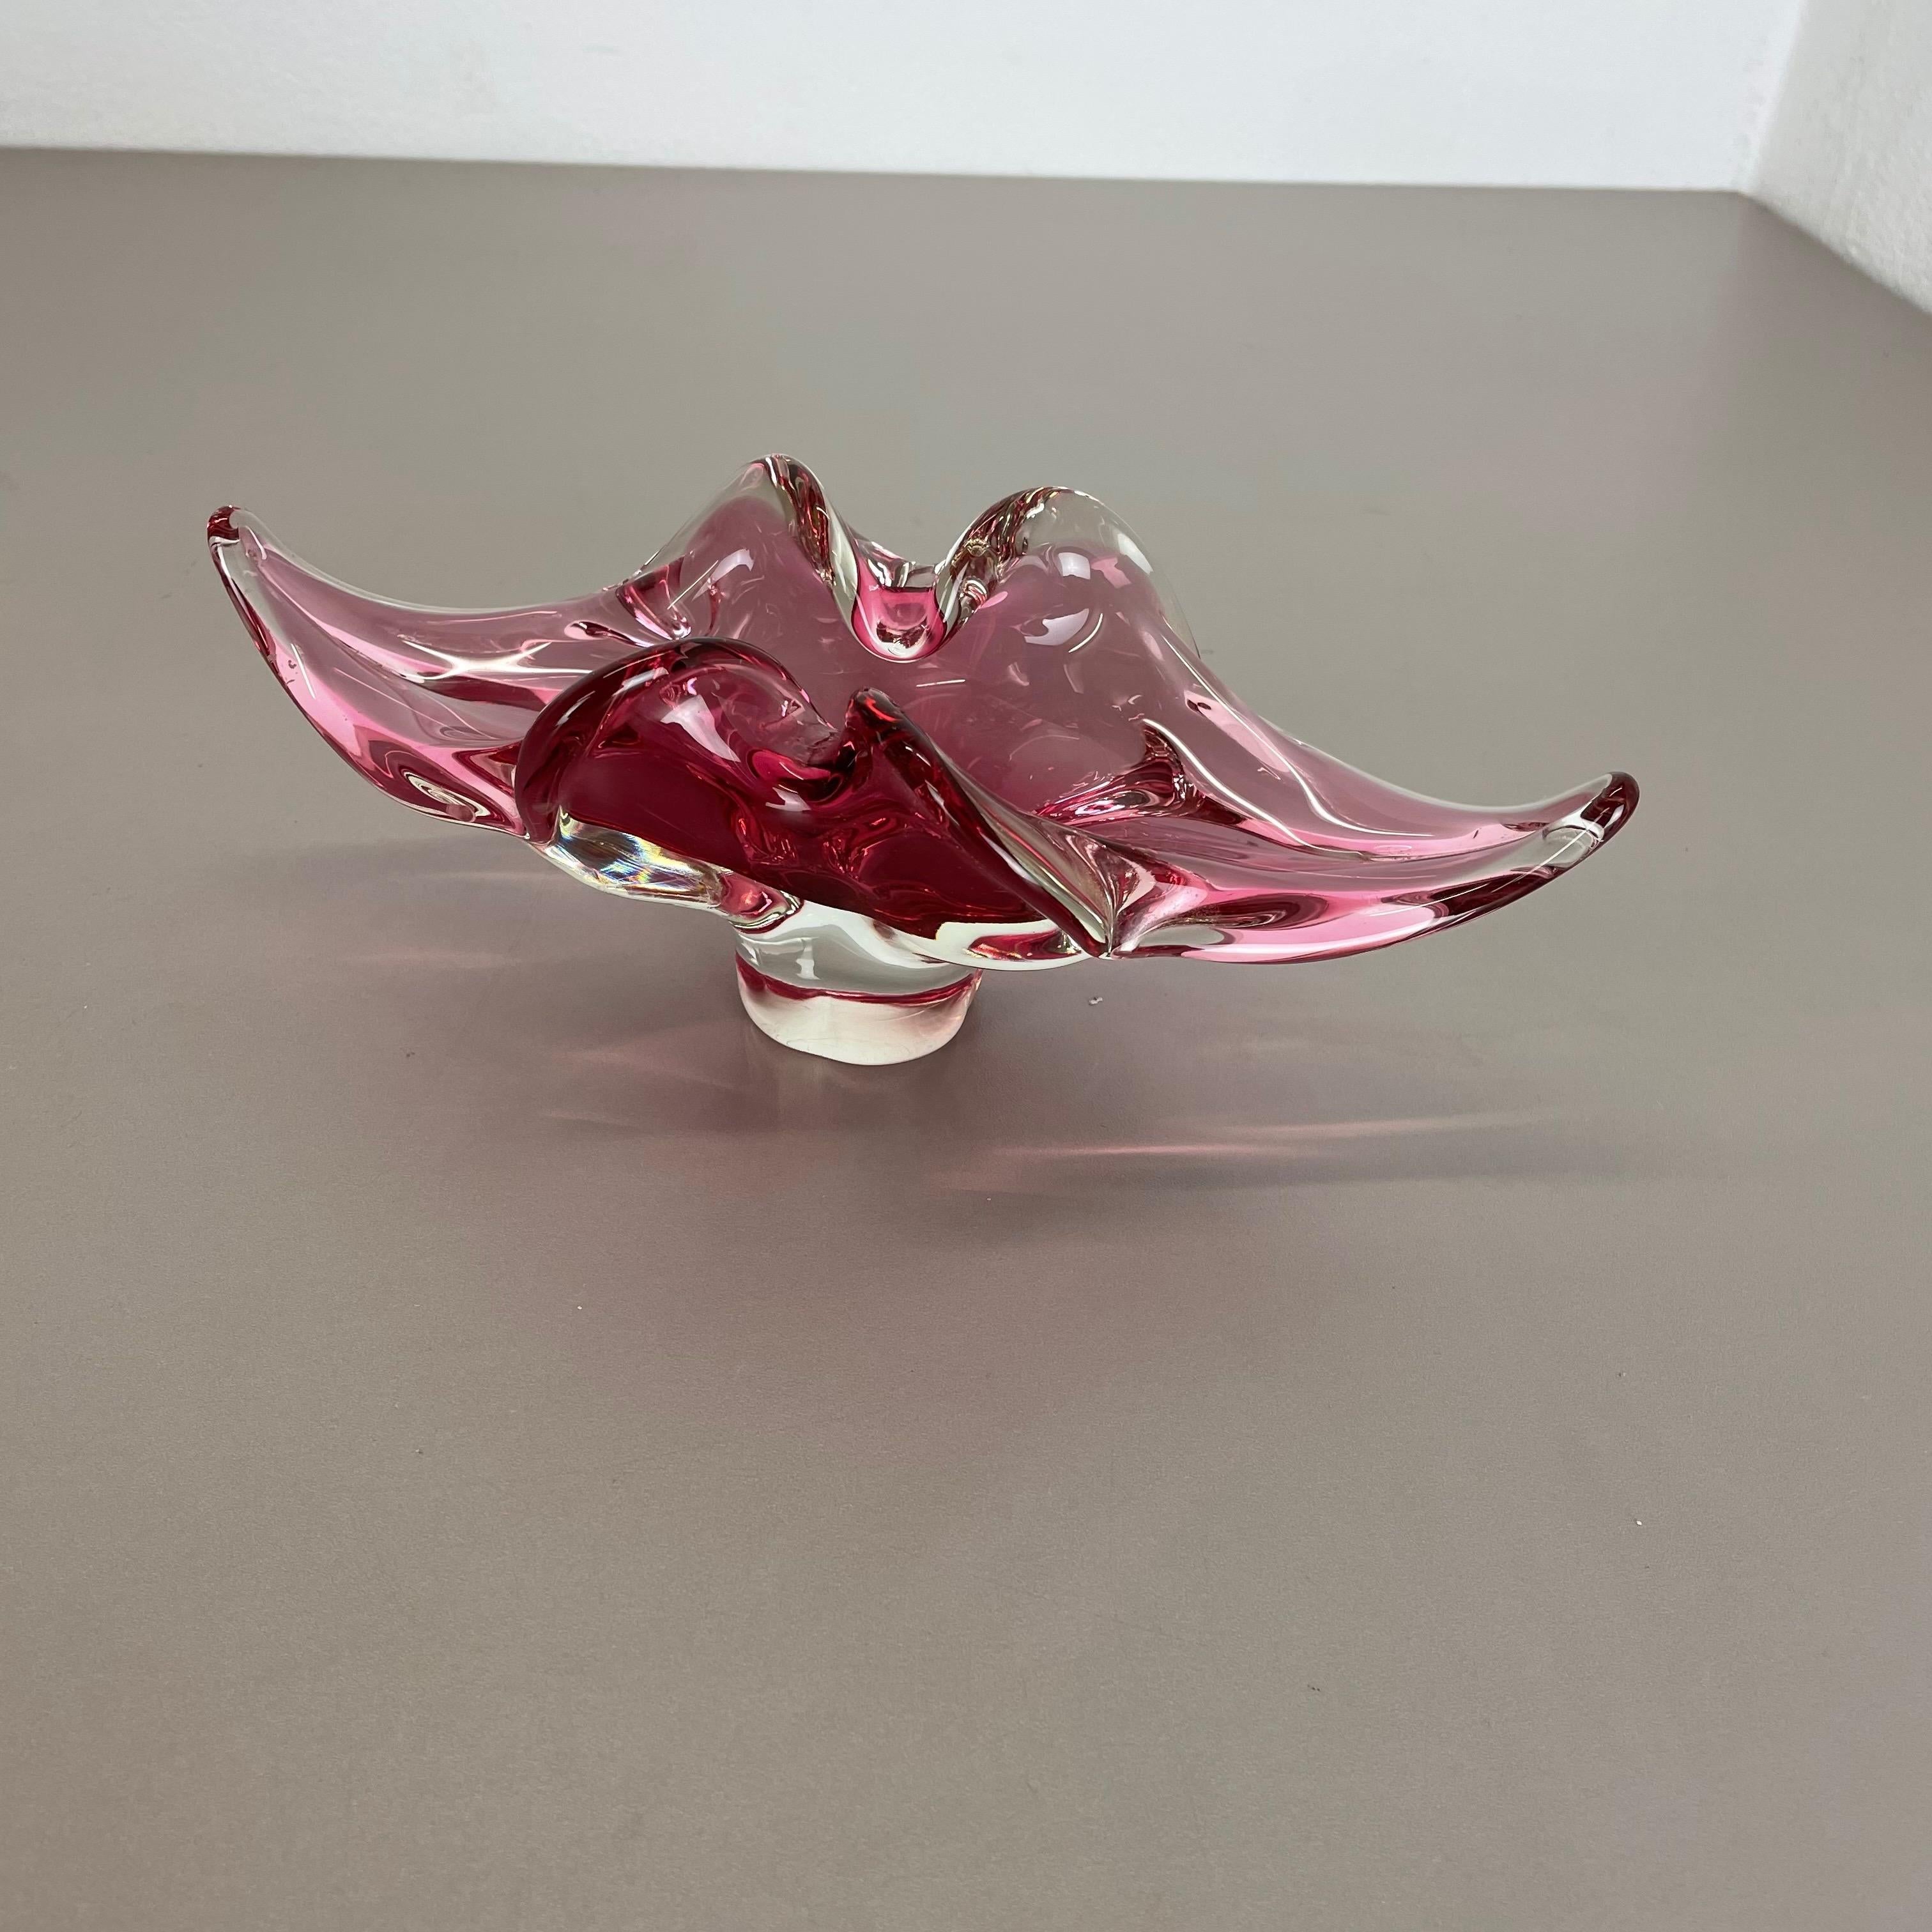 pink murano glass ashtray